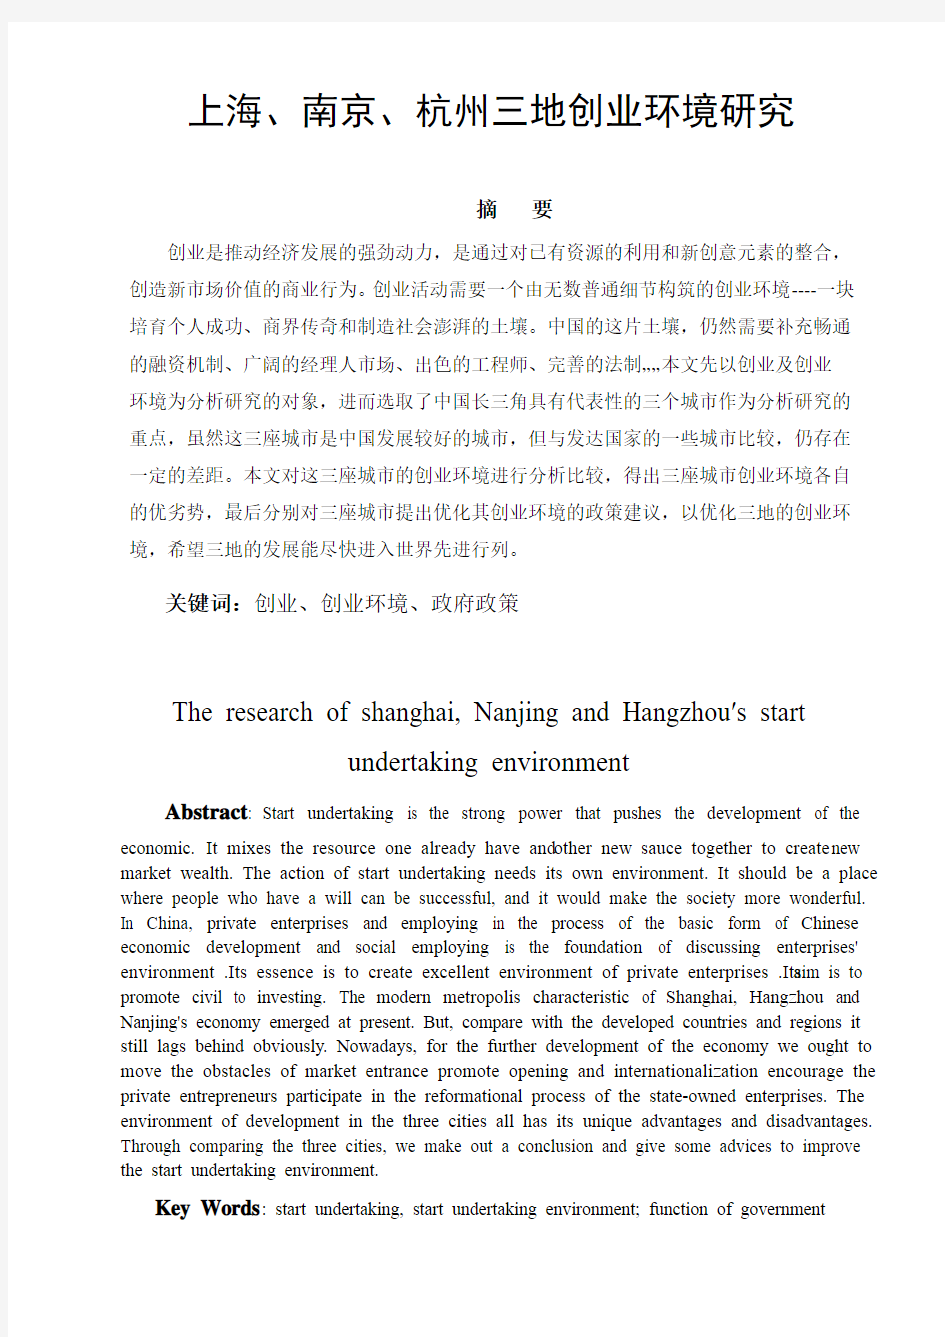 论文--上海、南京、杭州三地创业环境研究